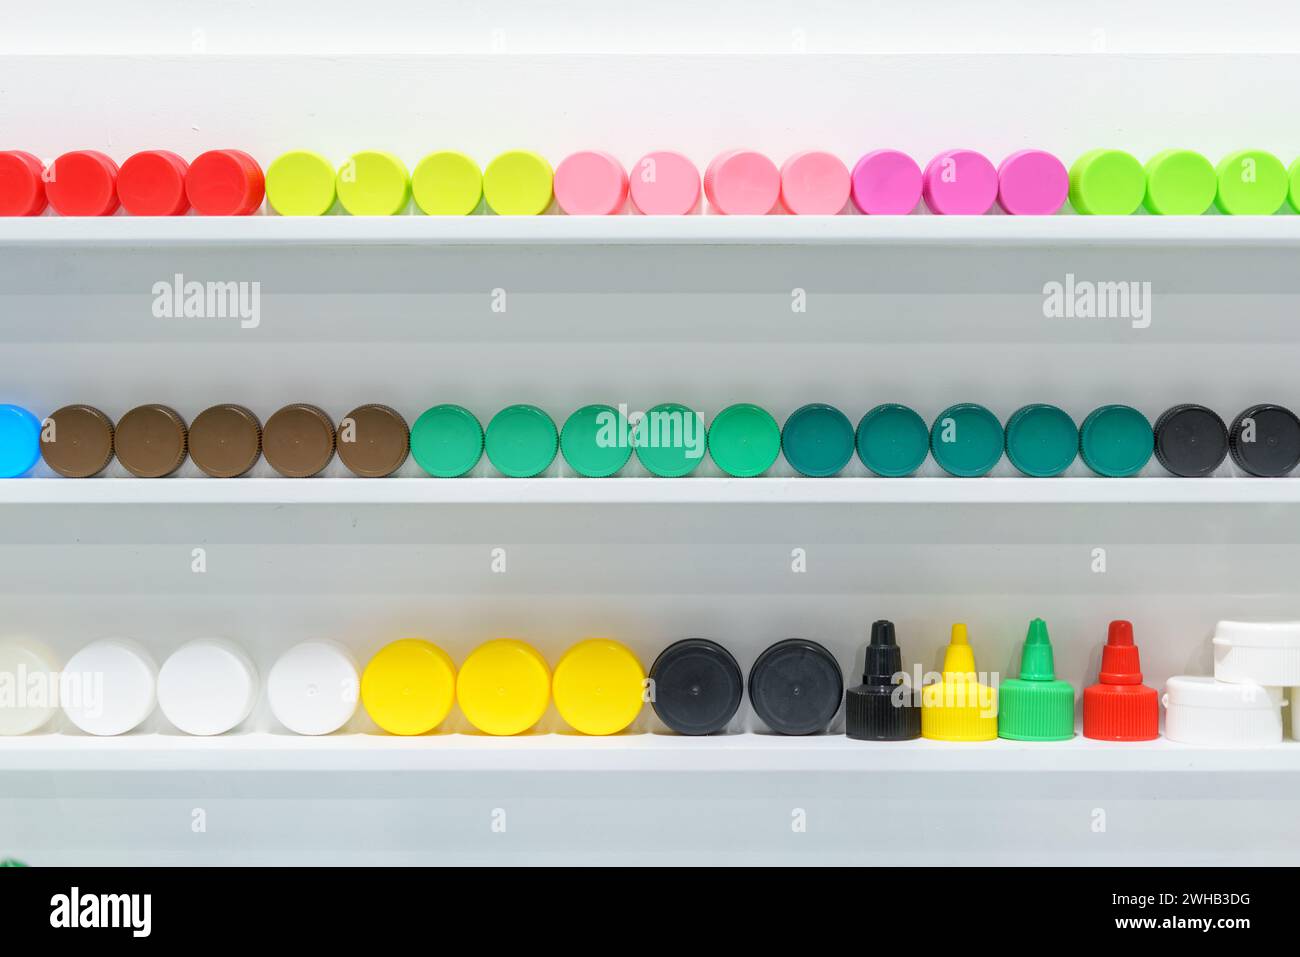 Eine lebendige Kollektion farbenfroher Flaschenverschlüsse, die ordentlich in Regalen angeordnet sind und eine große Auswahl an Farbtönen und Größen zur Inspiration für das Verpackungsdesign zeigen Stockfoto